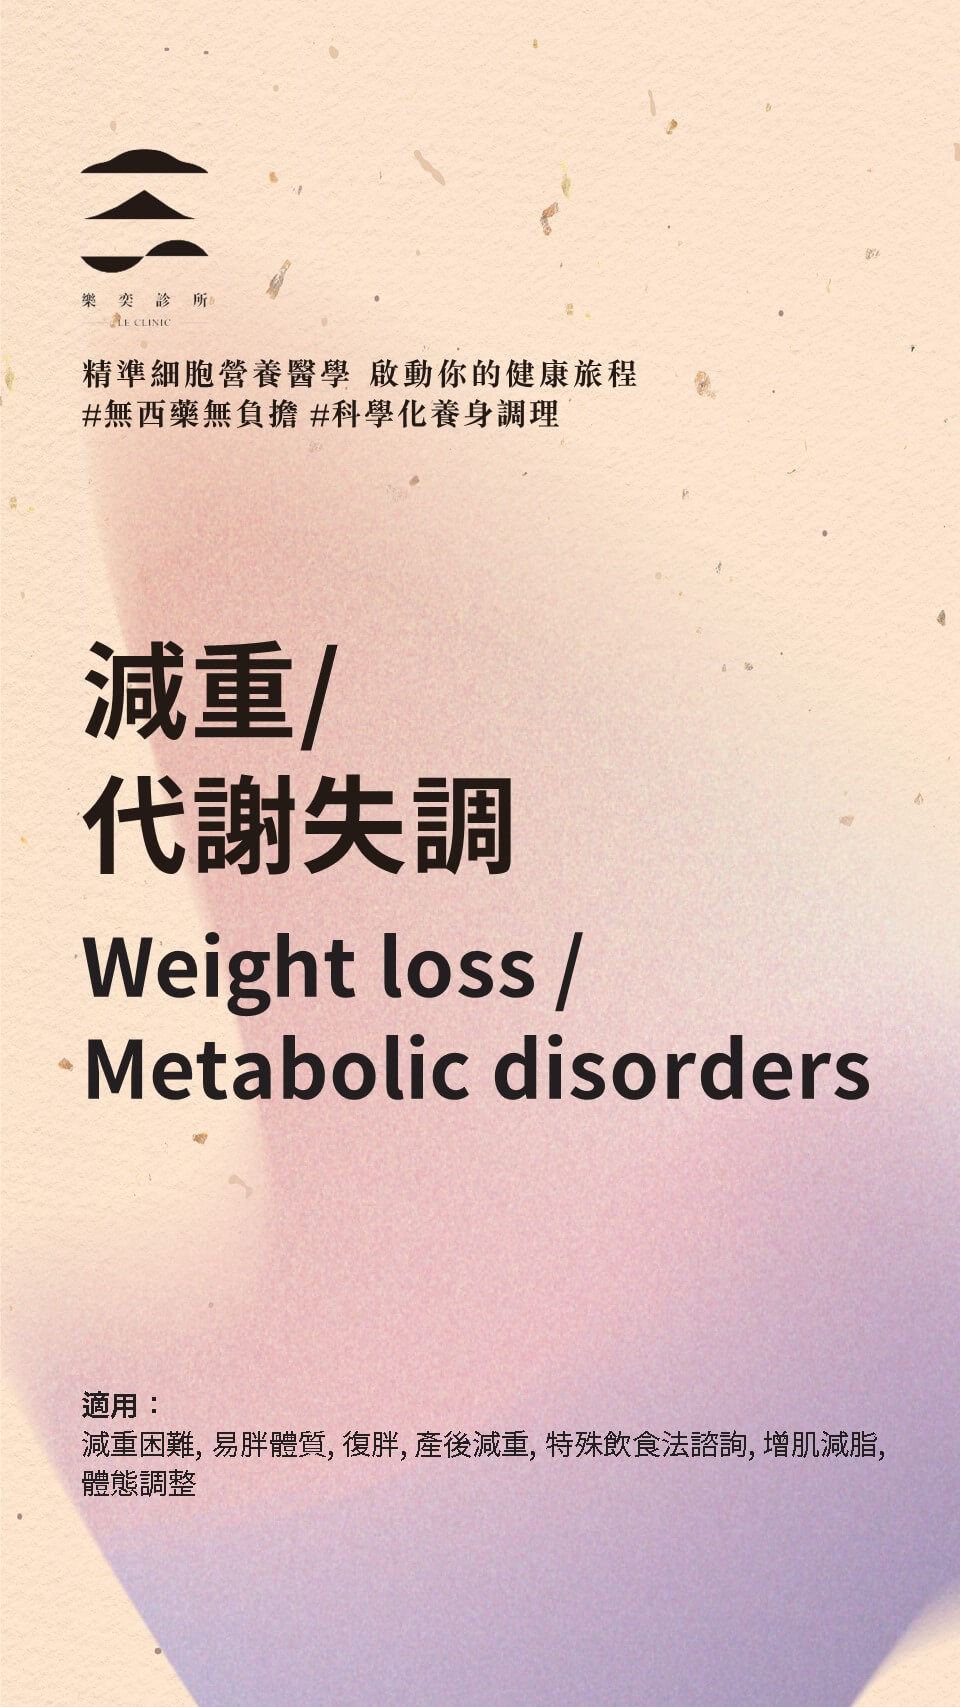 減重/代謝失調 Weight loss/Metabolic disorders - 主題